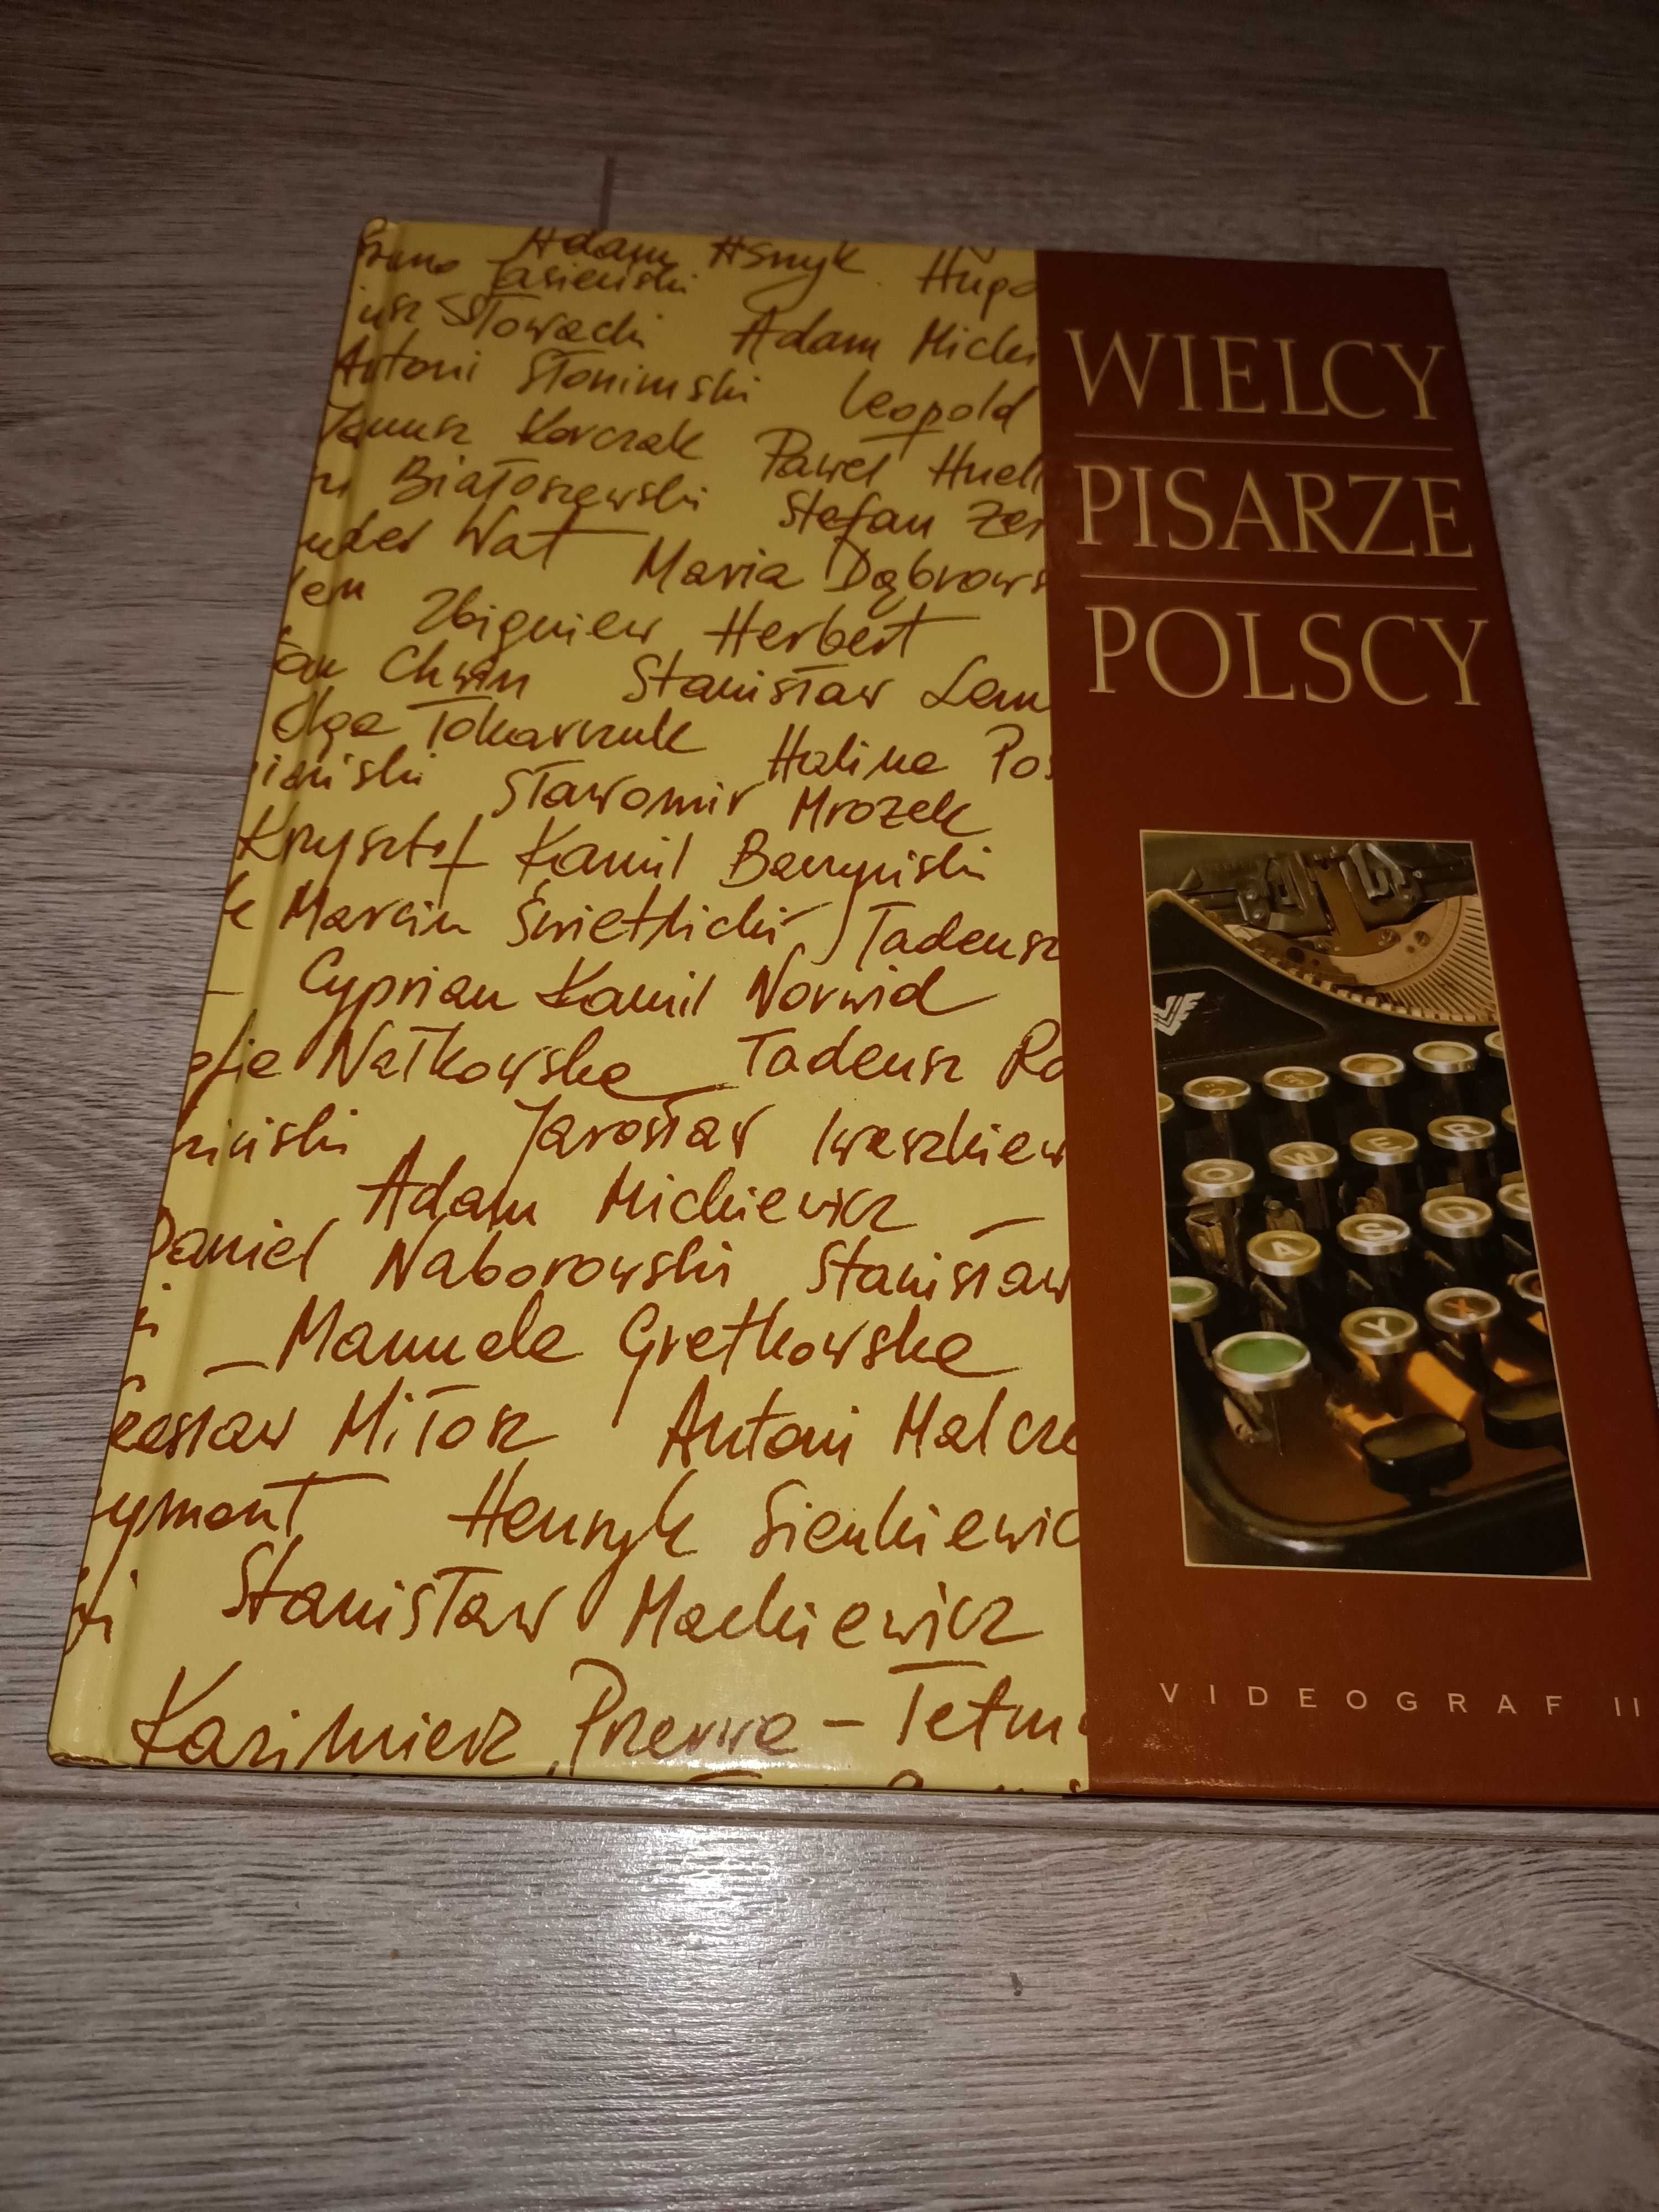 Wielcy pisarze polscy